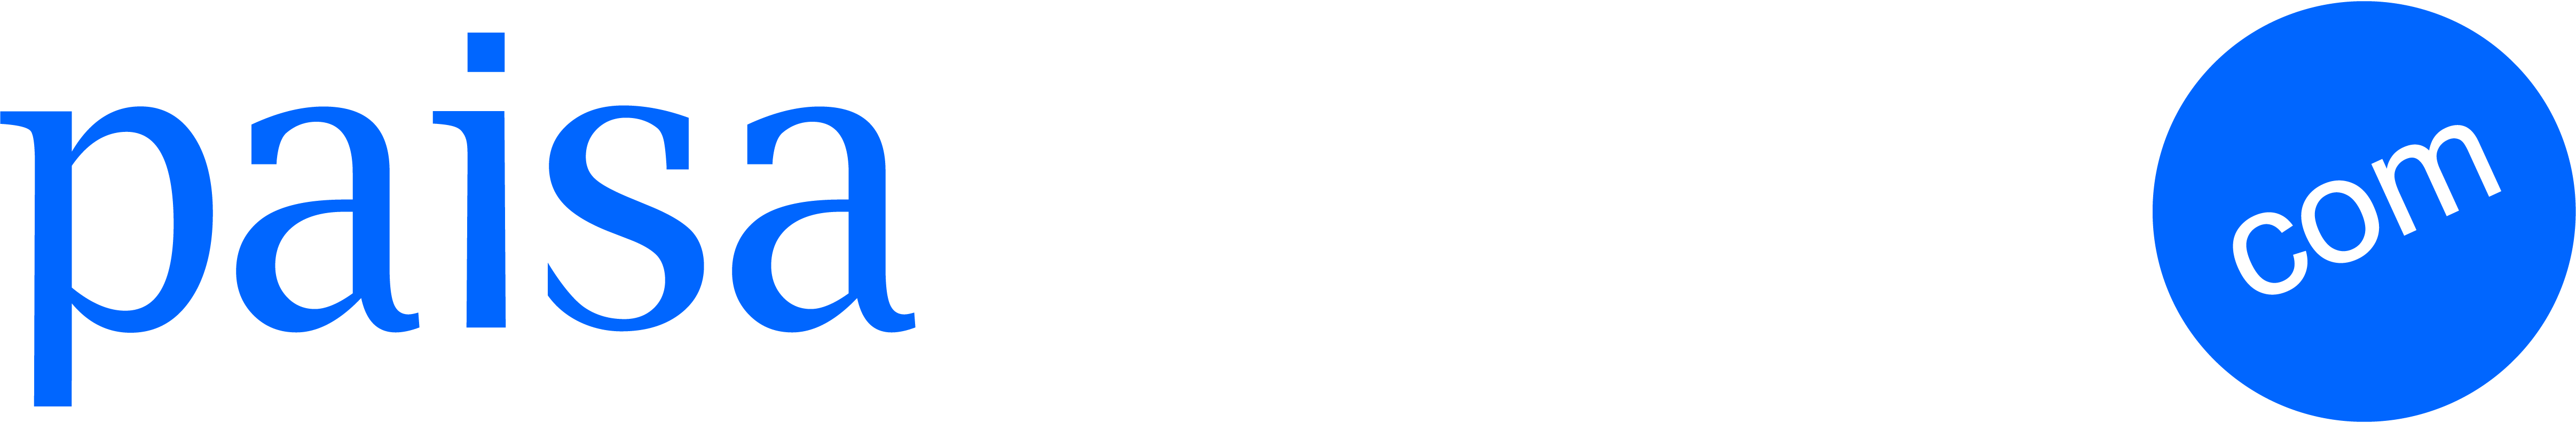 paisa-bazzar-logo